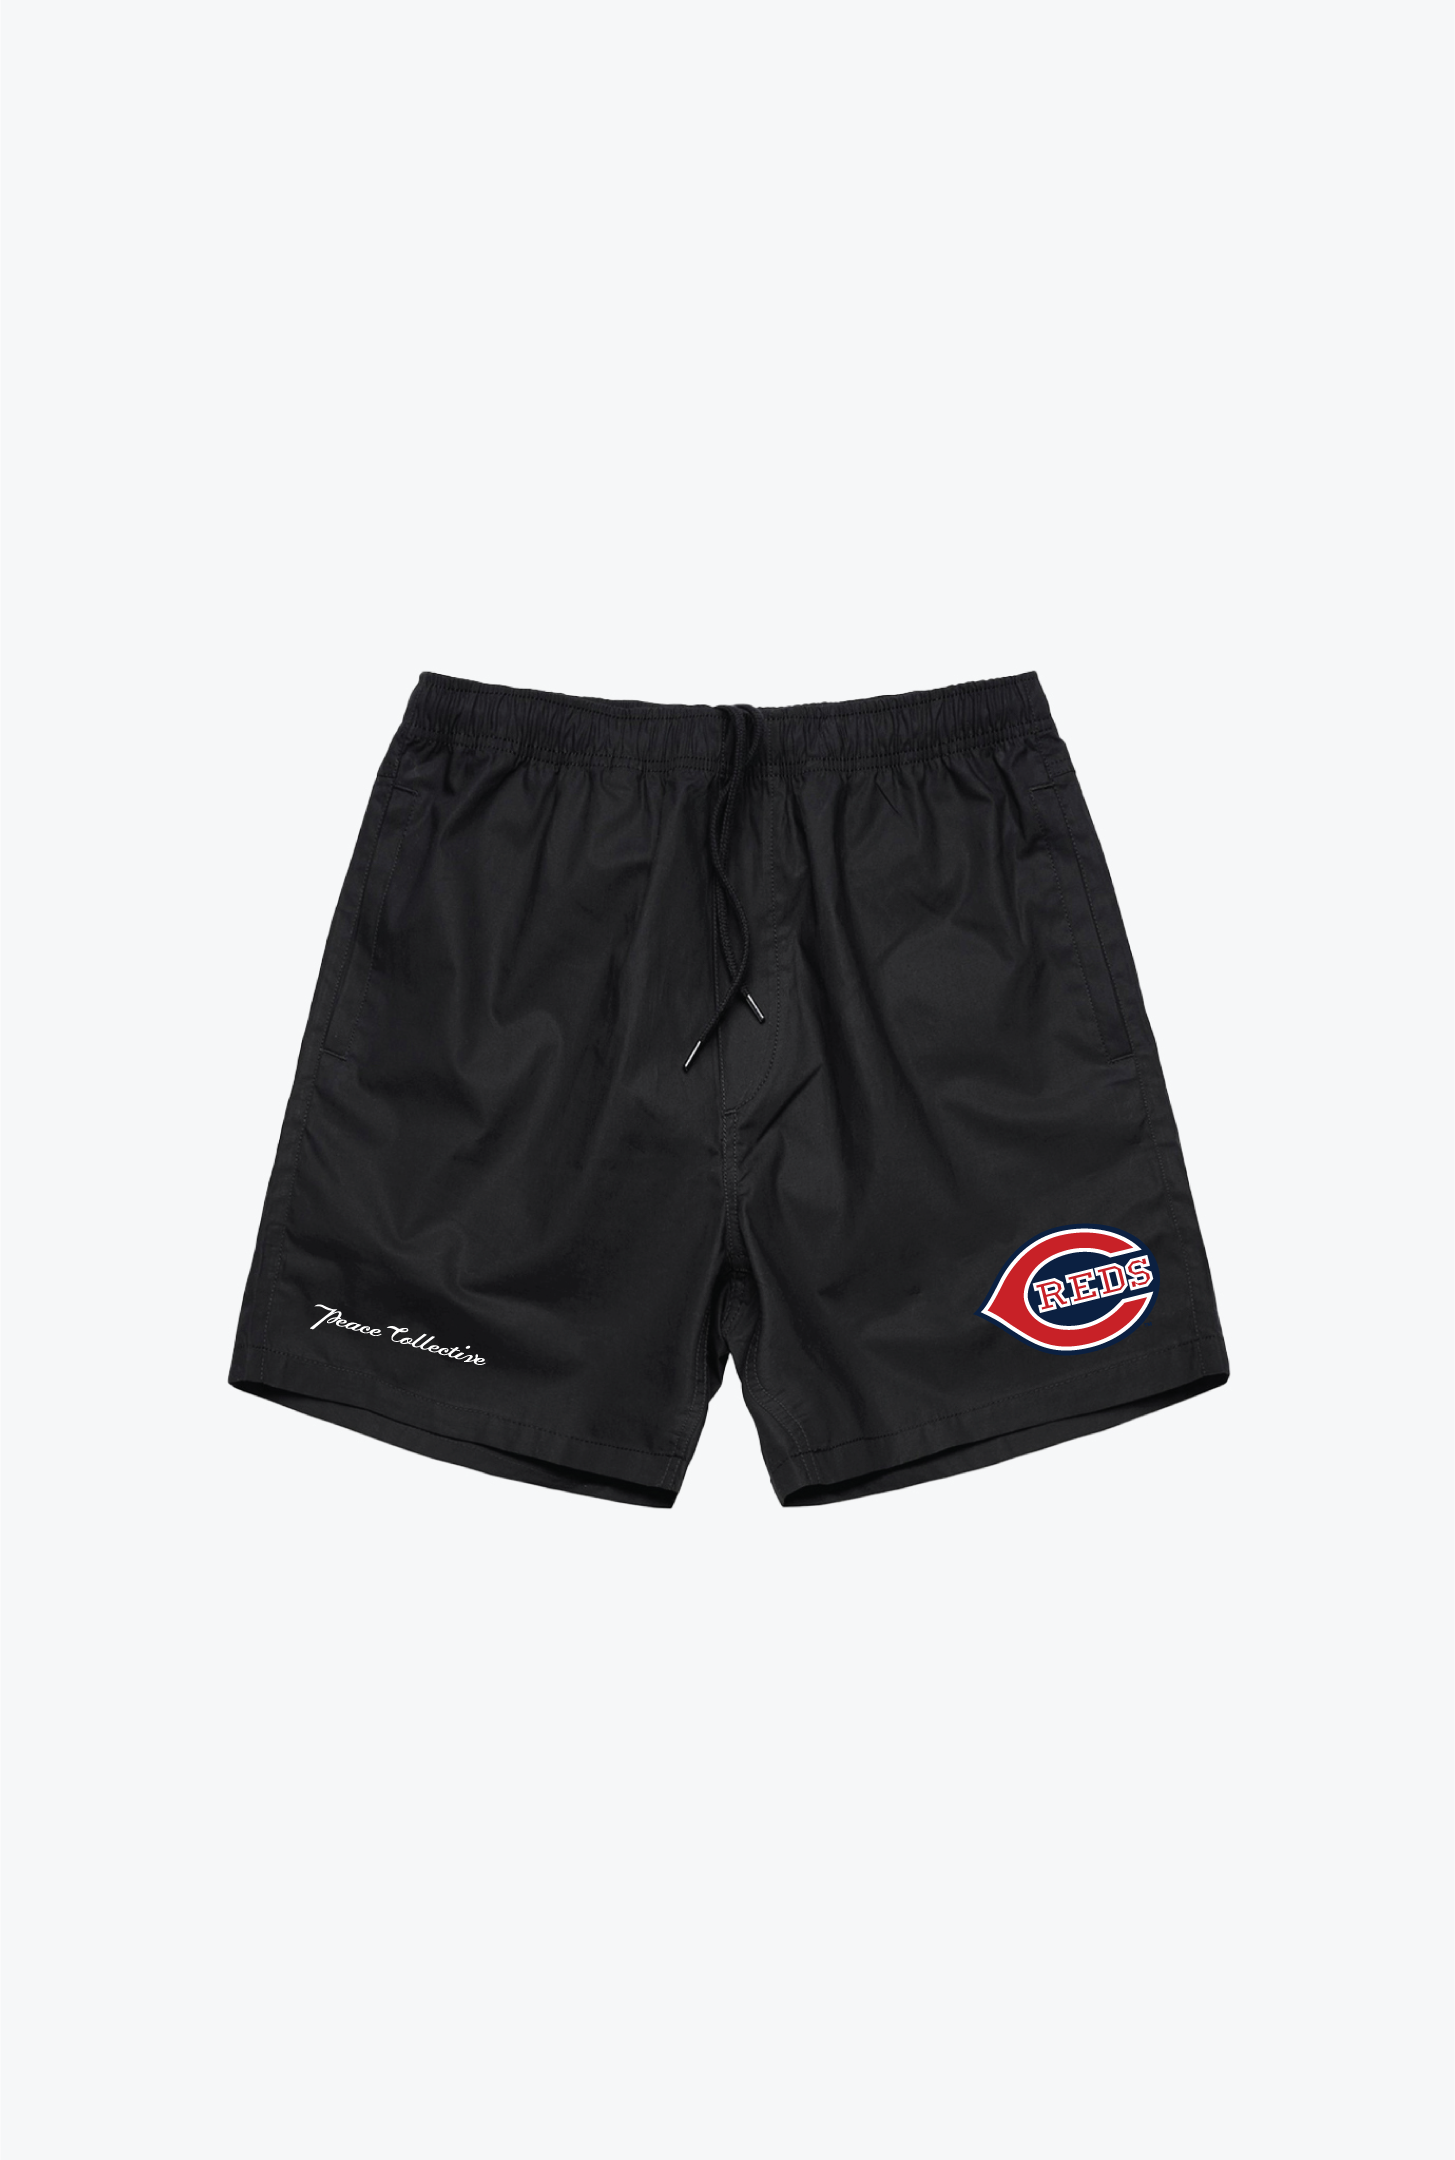 Cincinnati Reds Board Shorts - Black